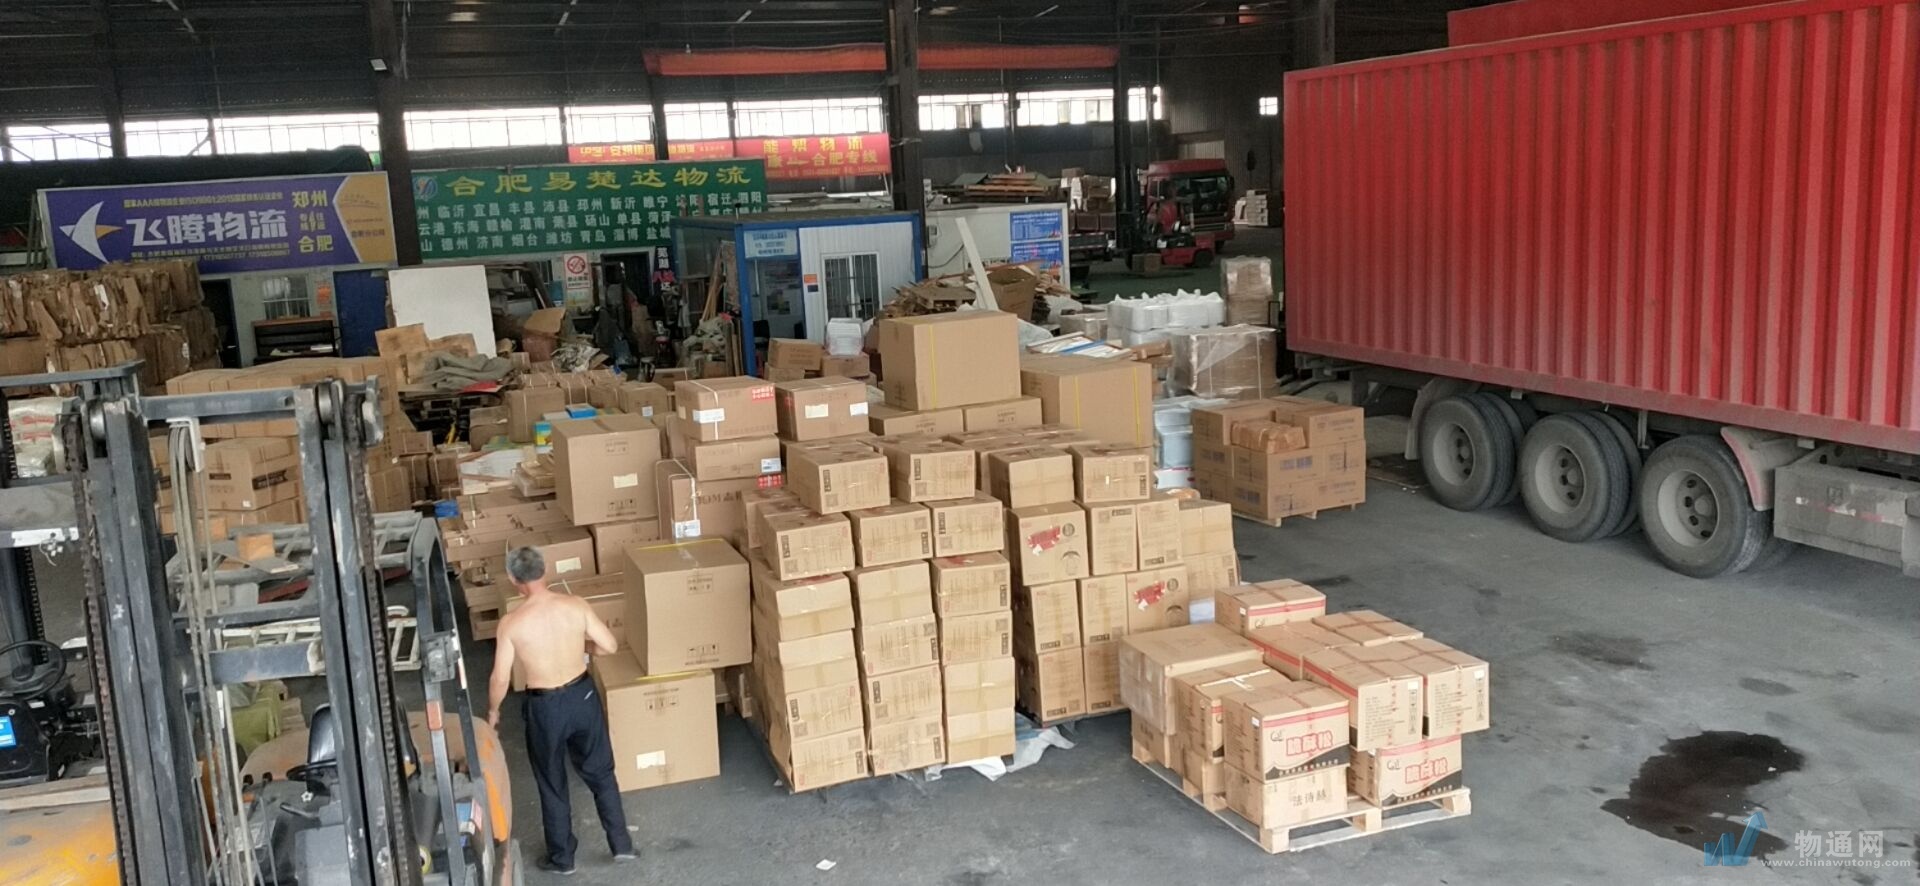 合肥到郑州零担物流 合肥到郑州货物运输 合肥到郑州物流公司图片